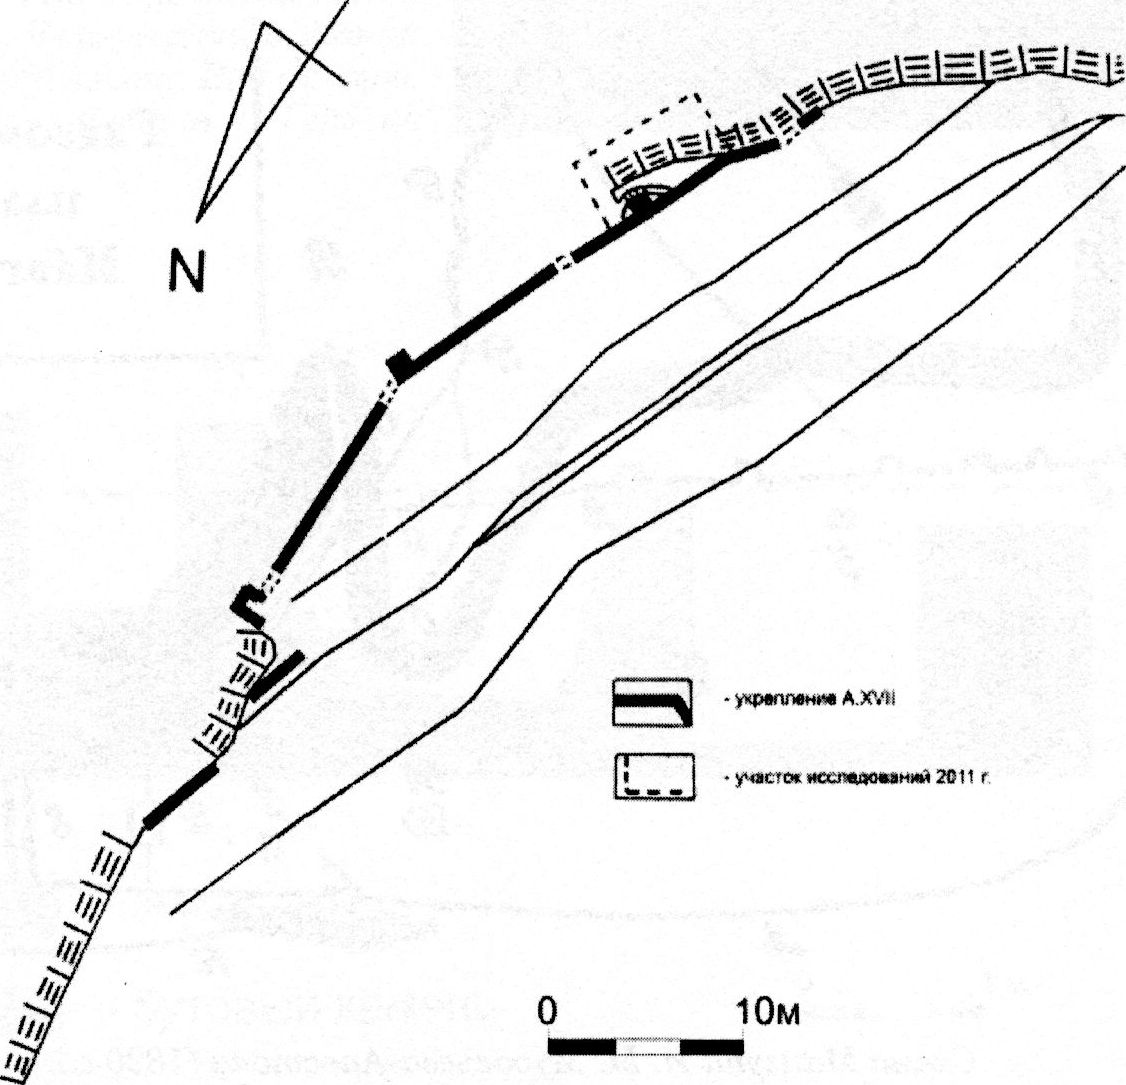 Мангуп. План укрепления A.XVII с участком исследования остатков крепостной калитки в 2011 г.